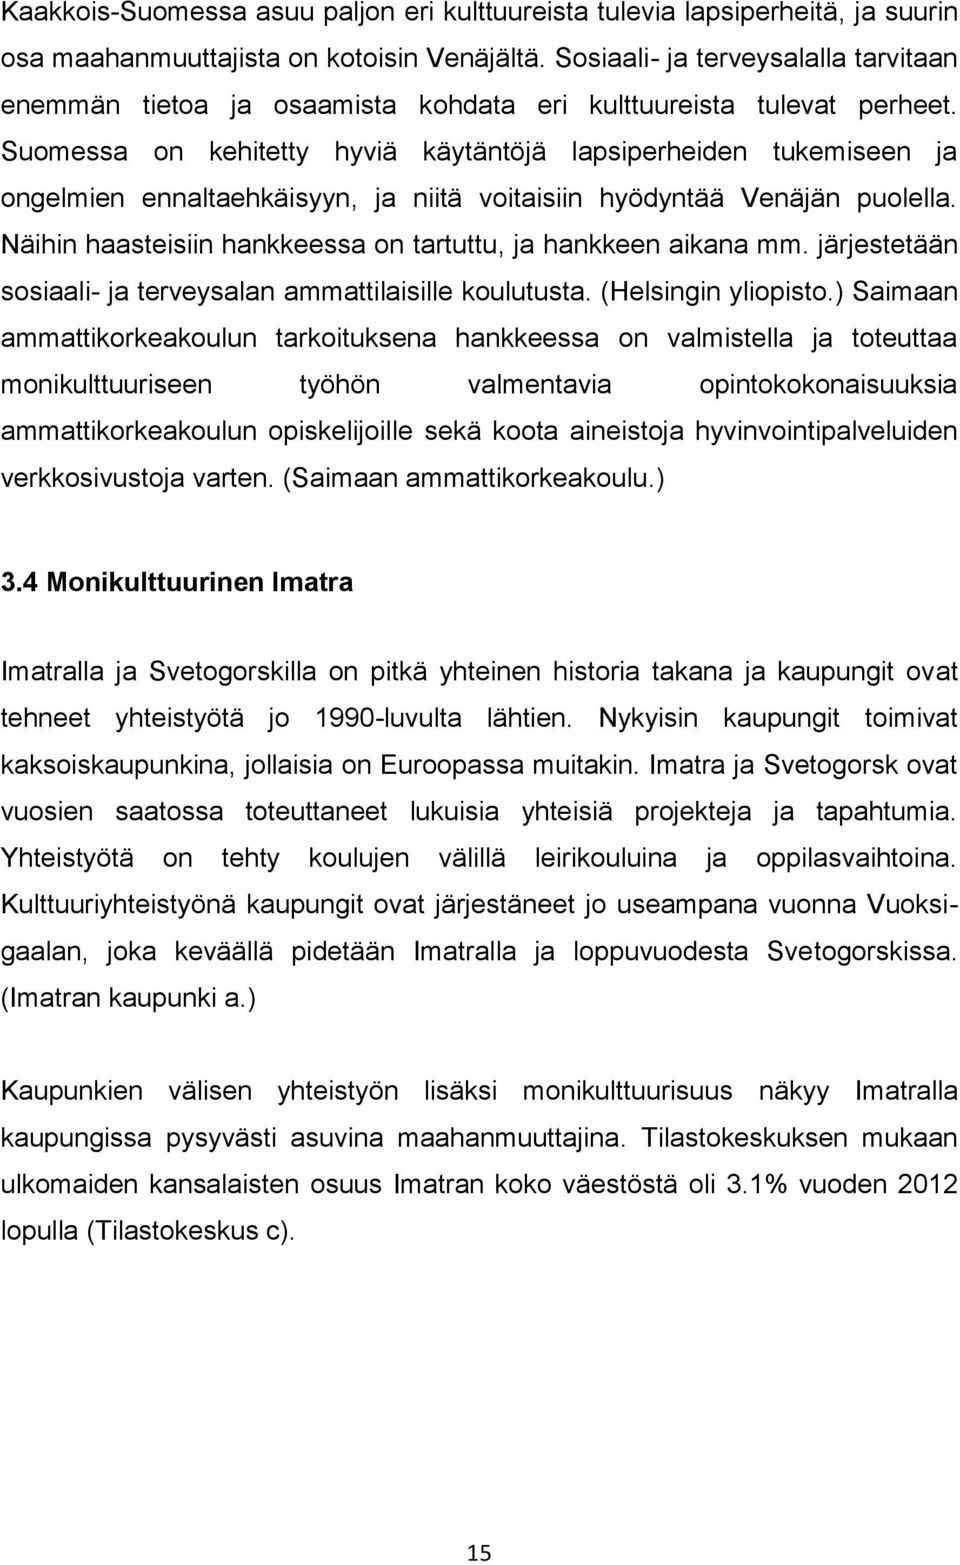 Suomessa on kehitetty hyviä käytäntöjä lapsiperheiden tukemiseen ja ongelmien ennaltaehkäisyyn, ja niitä voitaisiin hyödyntää Venäjän puolella.